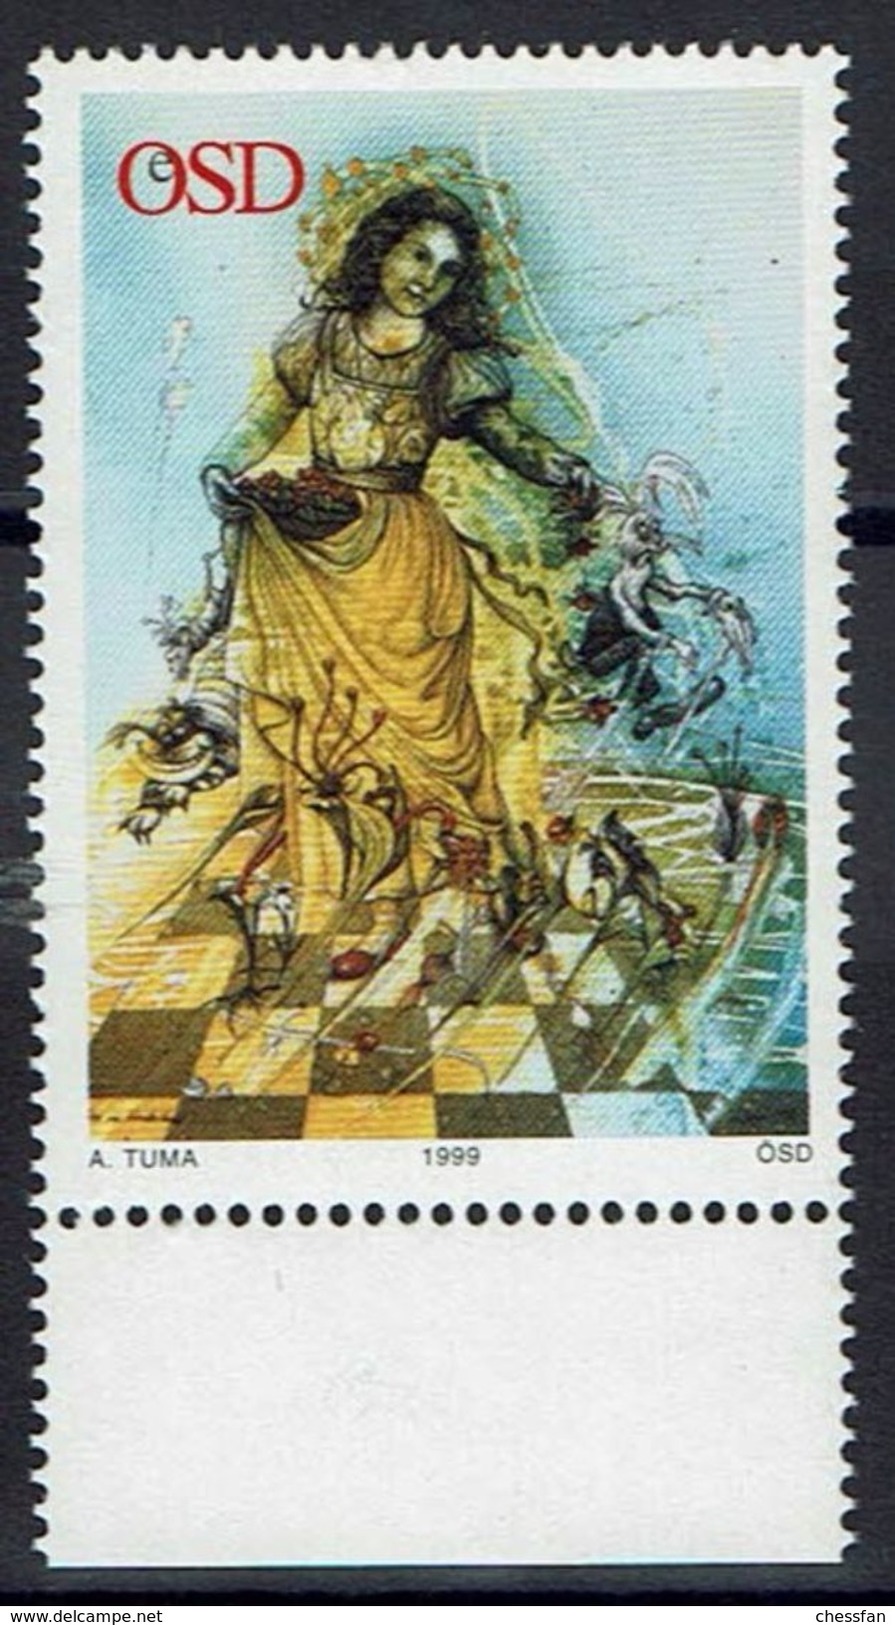 Schaken Schach Chess Ajedrez - Österreichische Staatsdruckerei - Vignet Caïssa - Echecs